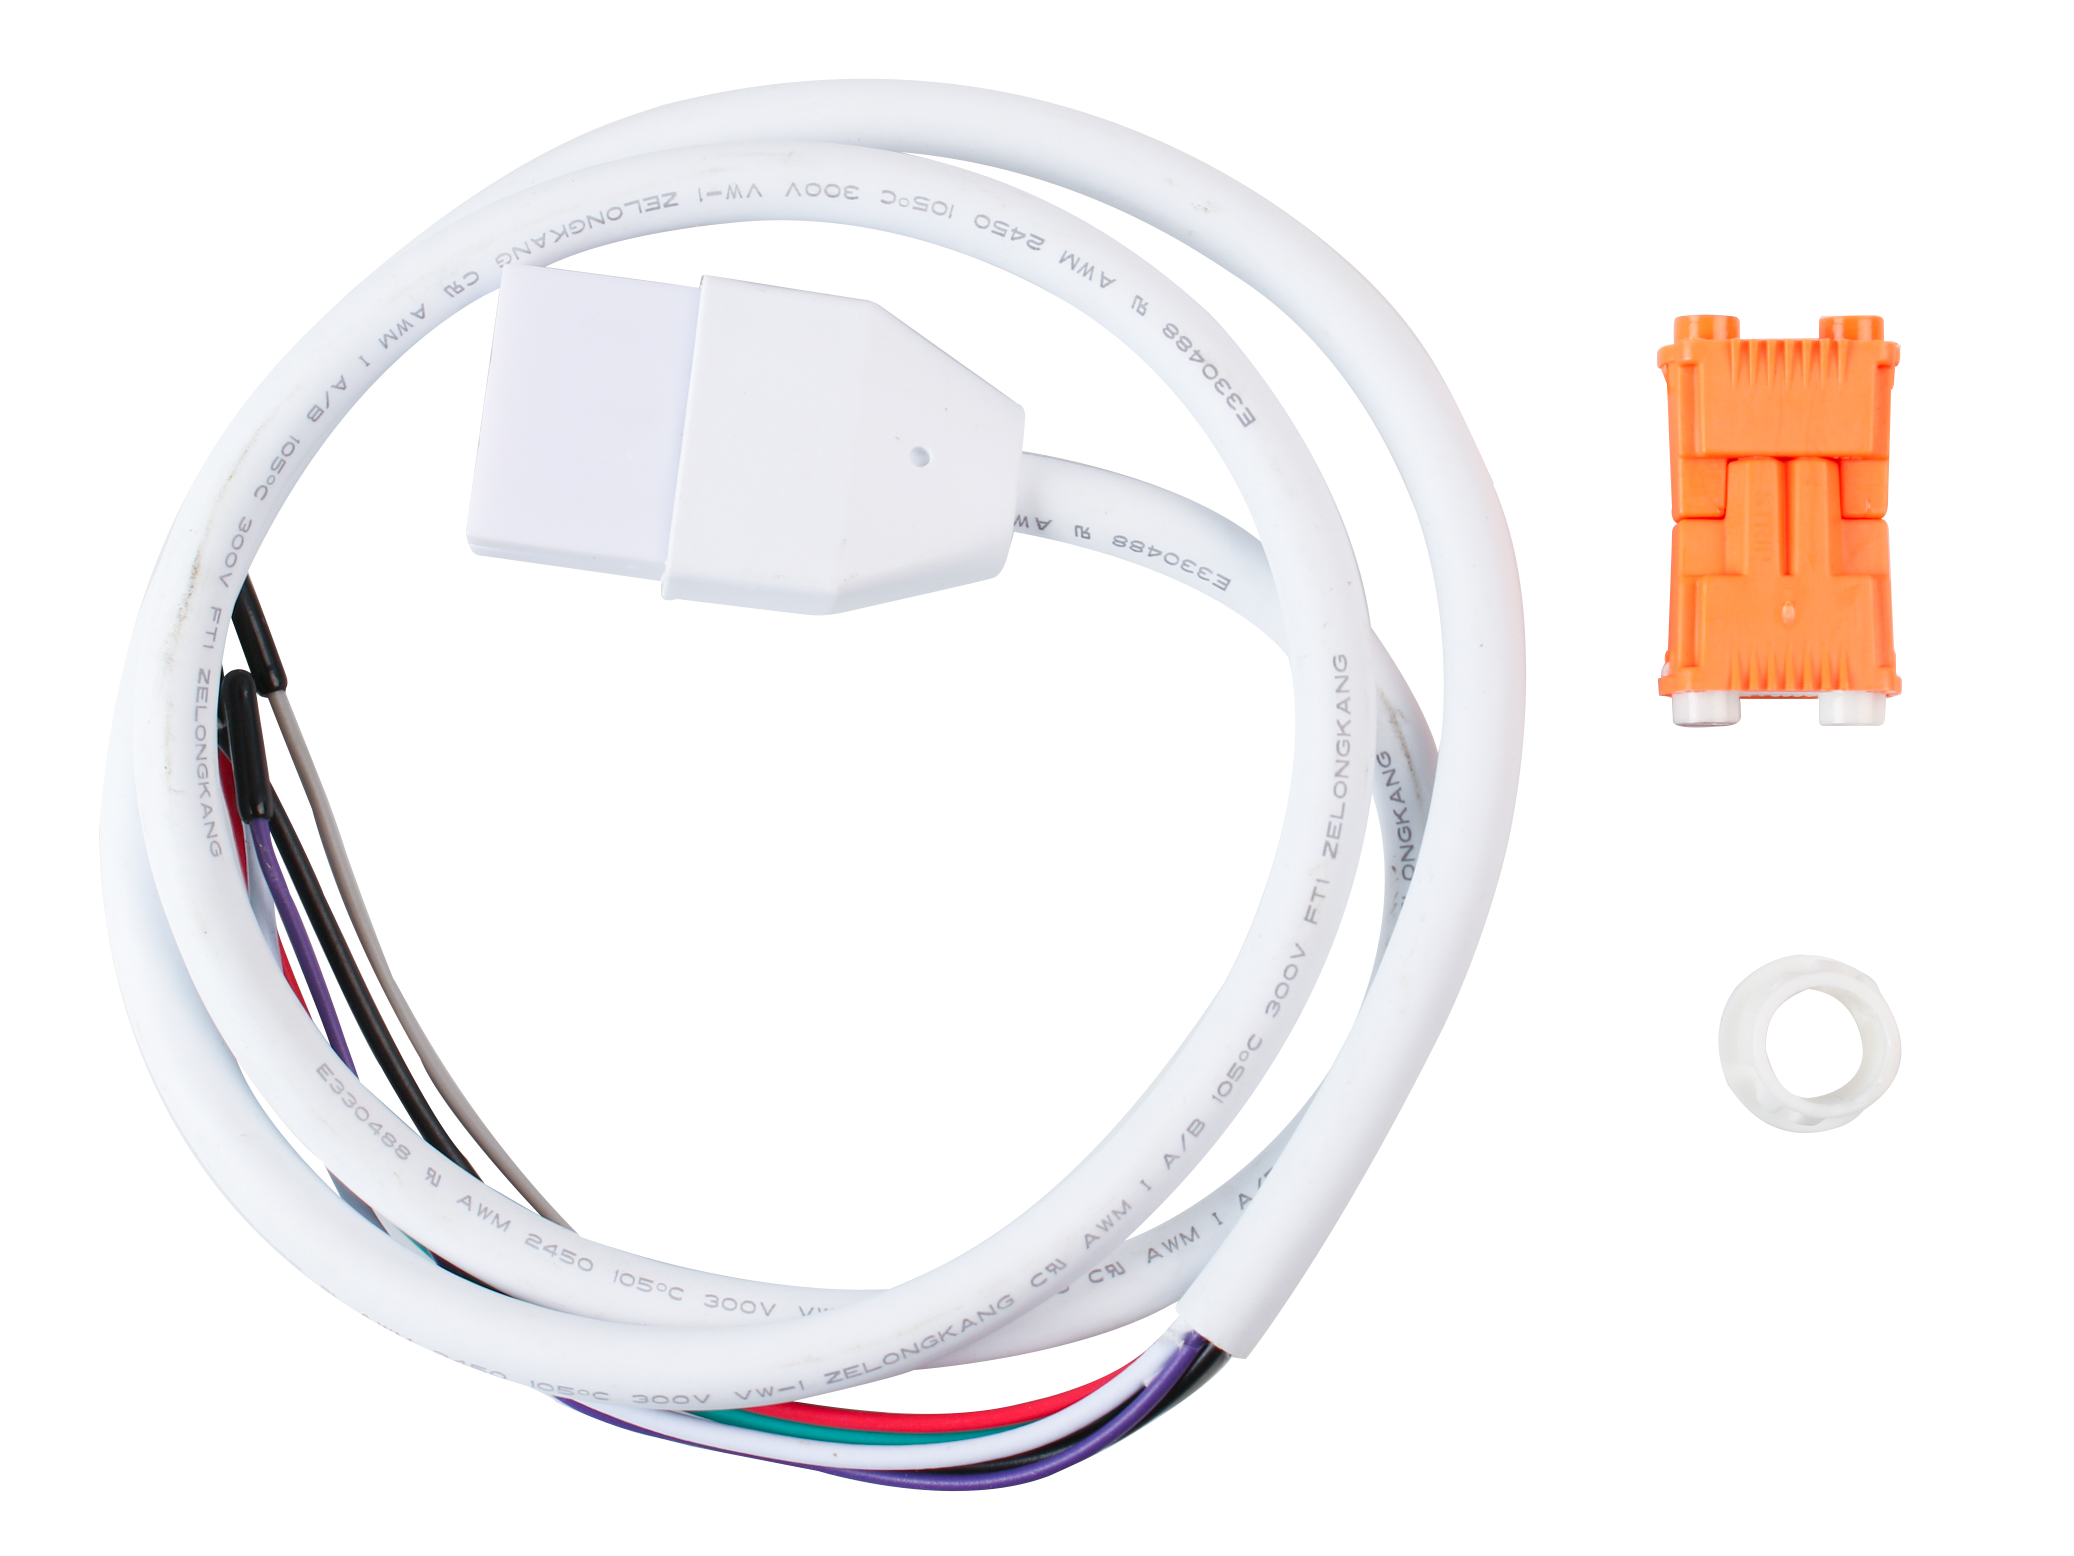 3' Power Cable For Light Efficient Design LED BarKit Retrofit/Fixture